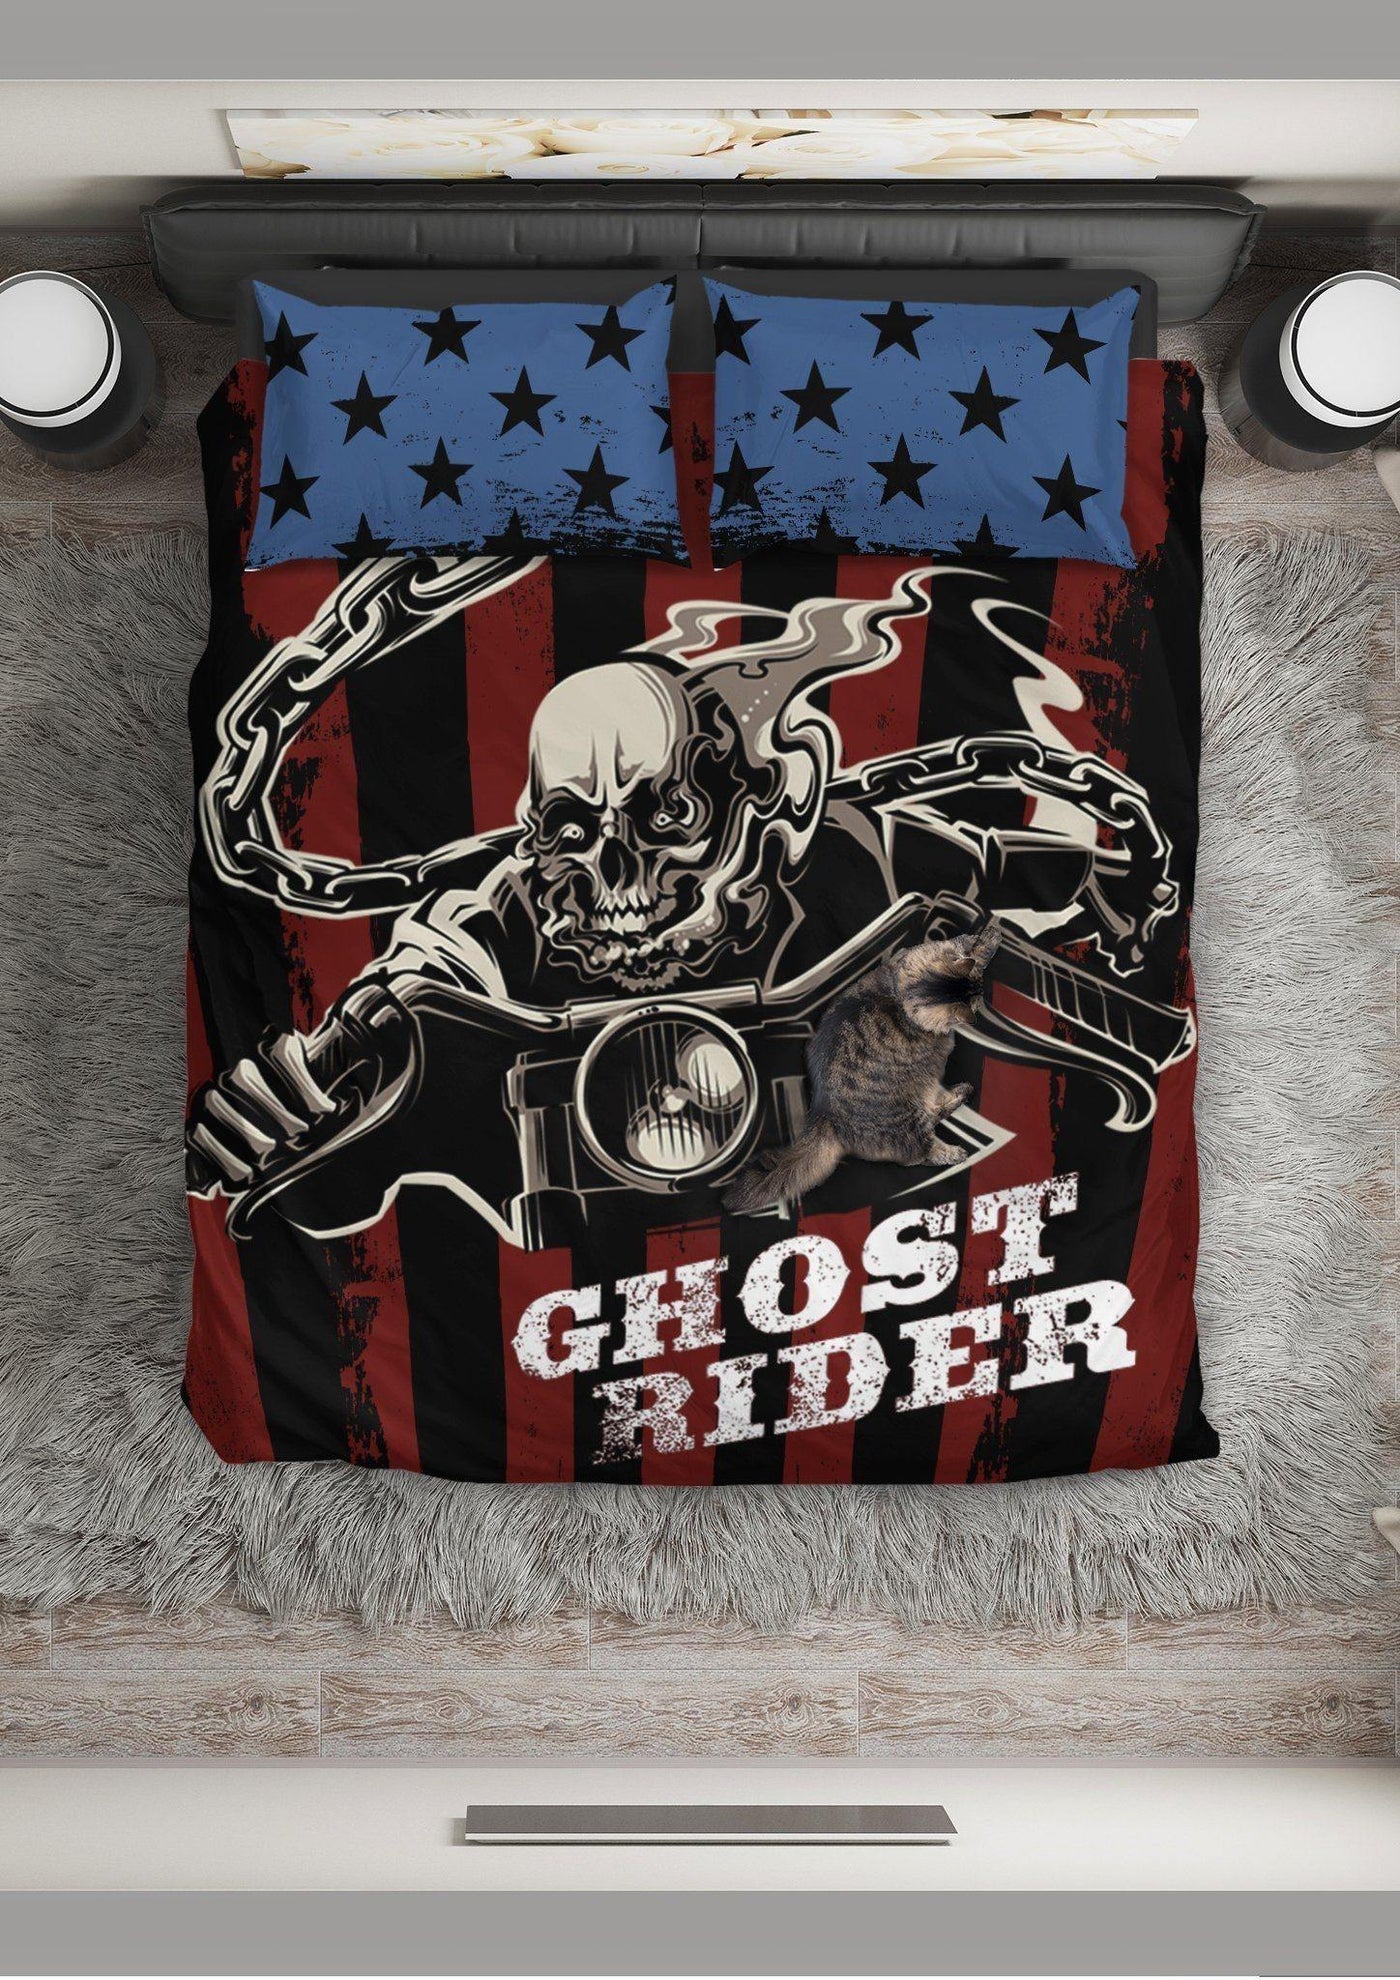 Ghost Rider Bedding Set - American Legend Rider